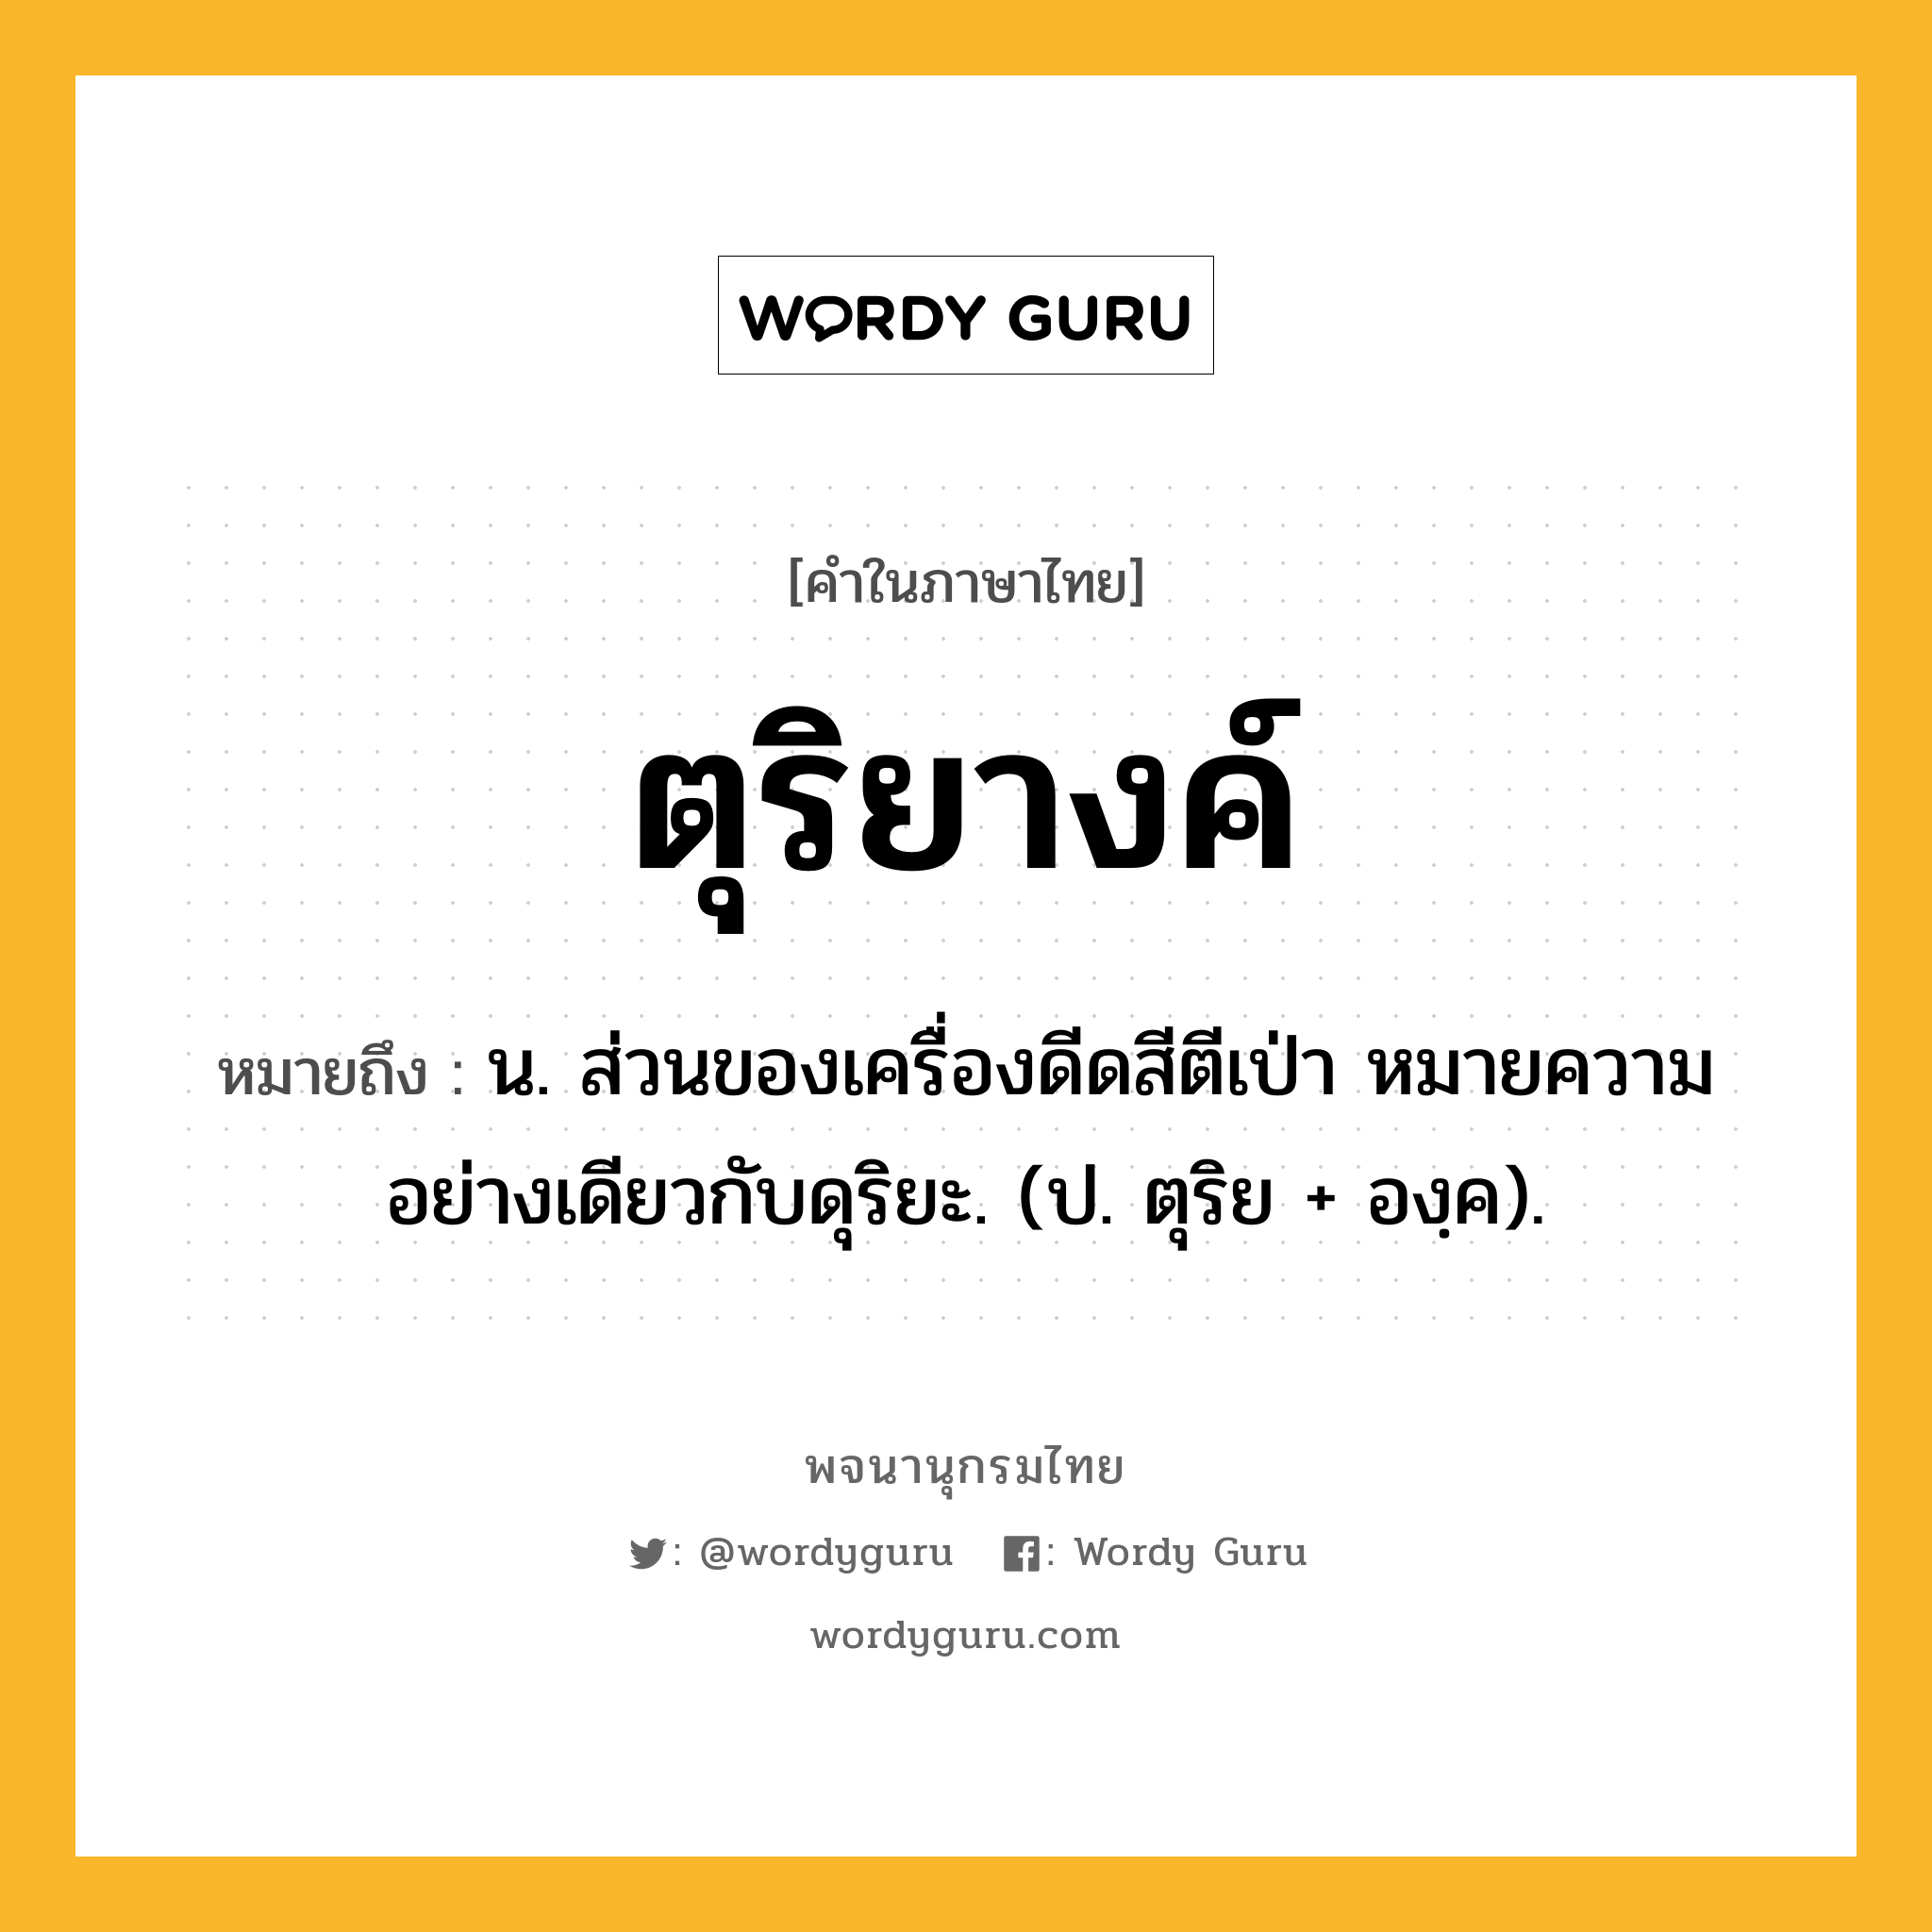 ตุริยางค์ หมายถึงอะไร?, คำในภาษาไทย ตุริยางค์ หมายถึง น. ส่วนของเครื่องดีดสีตีเป่า หมายความอย่างเดียวกับดุริยะ. (ป. ตุริย + องฺค).